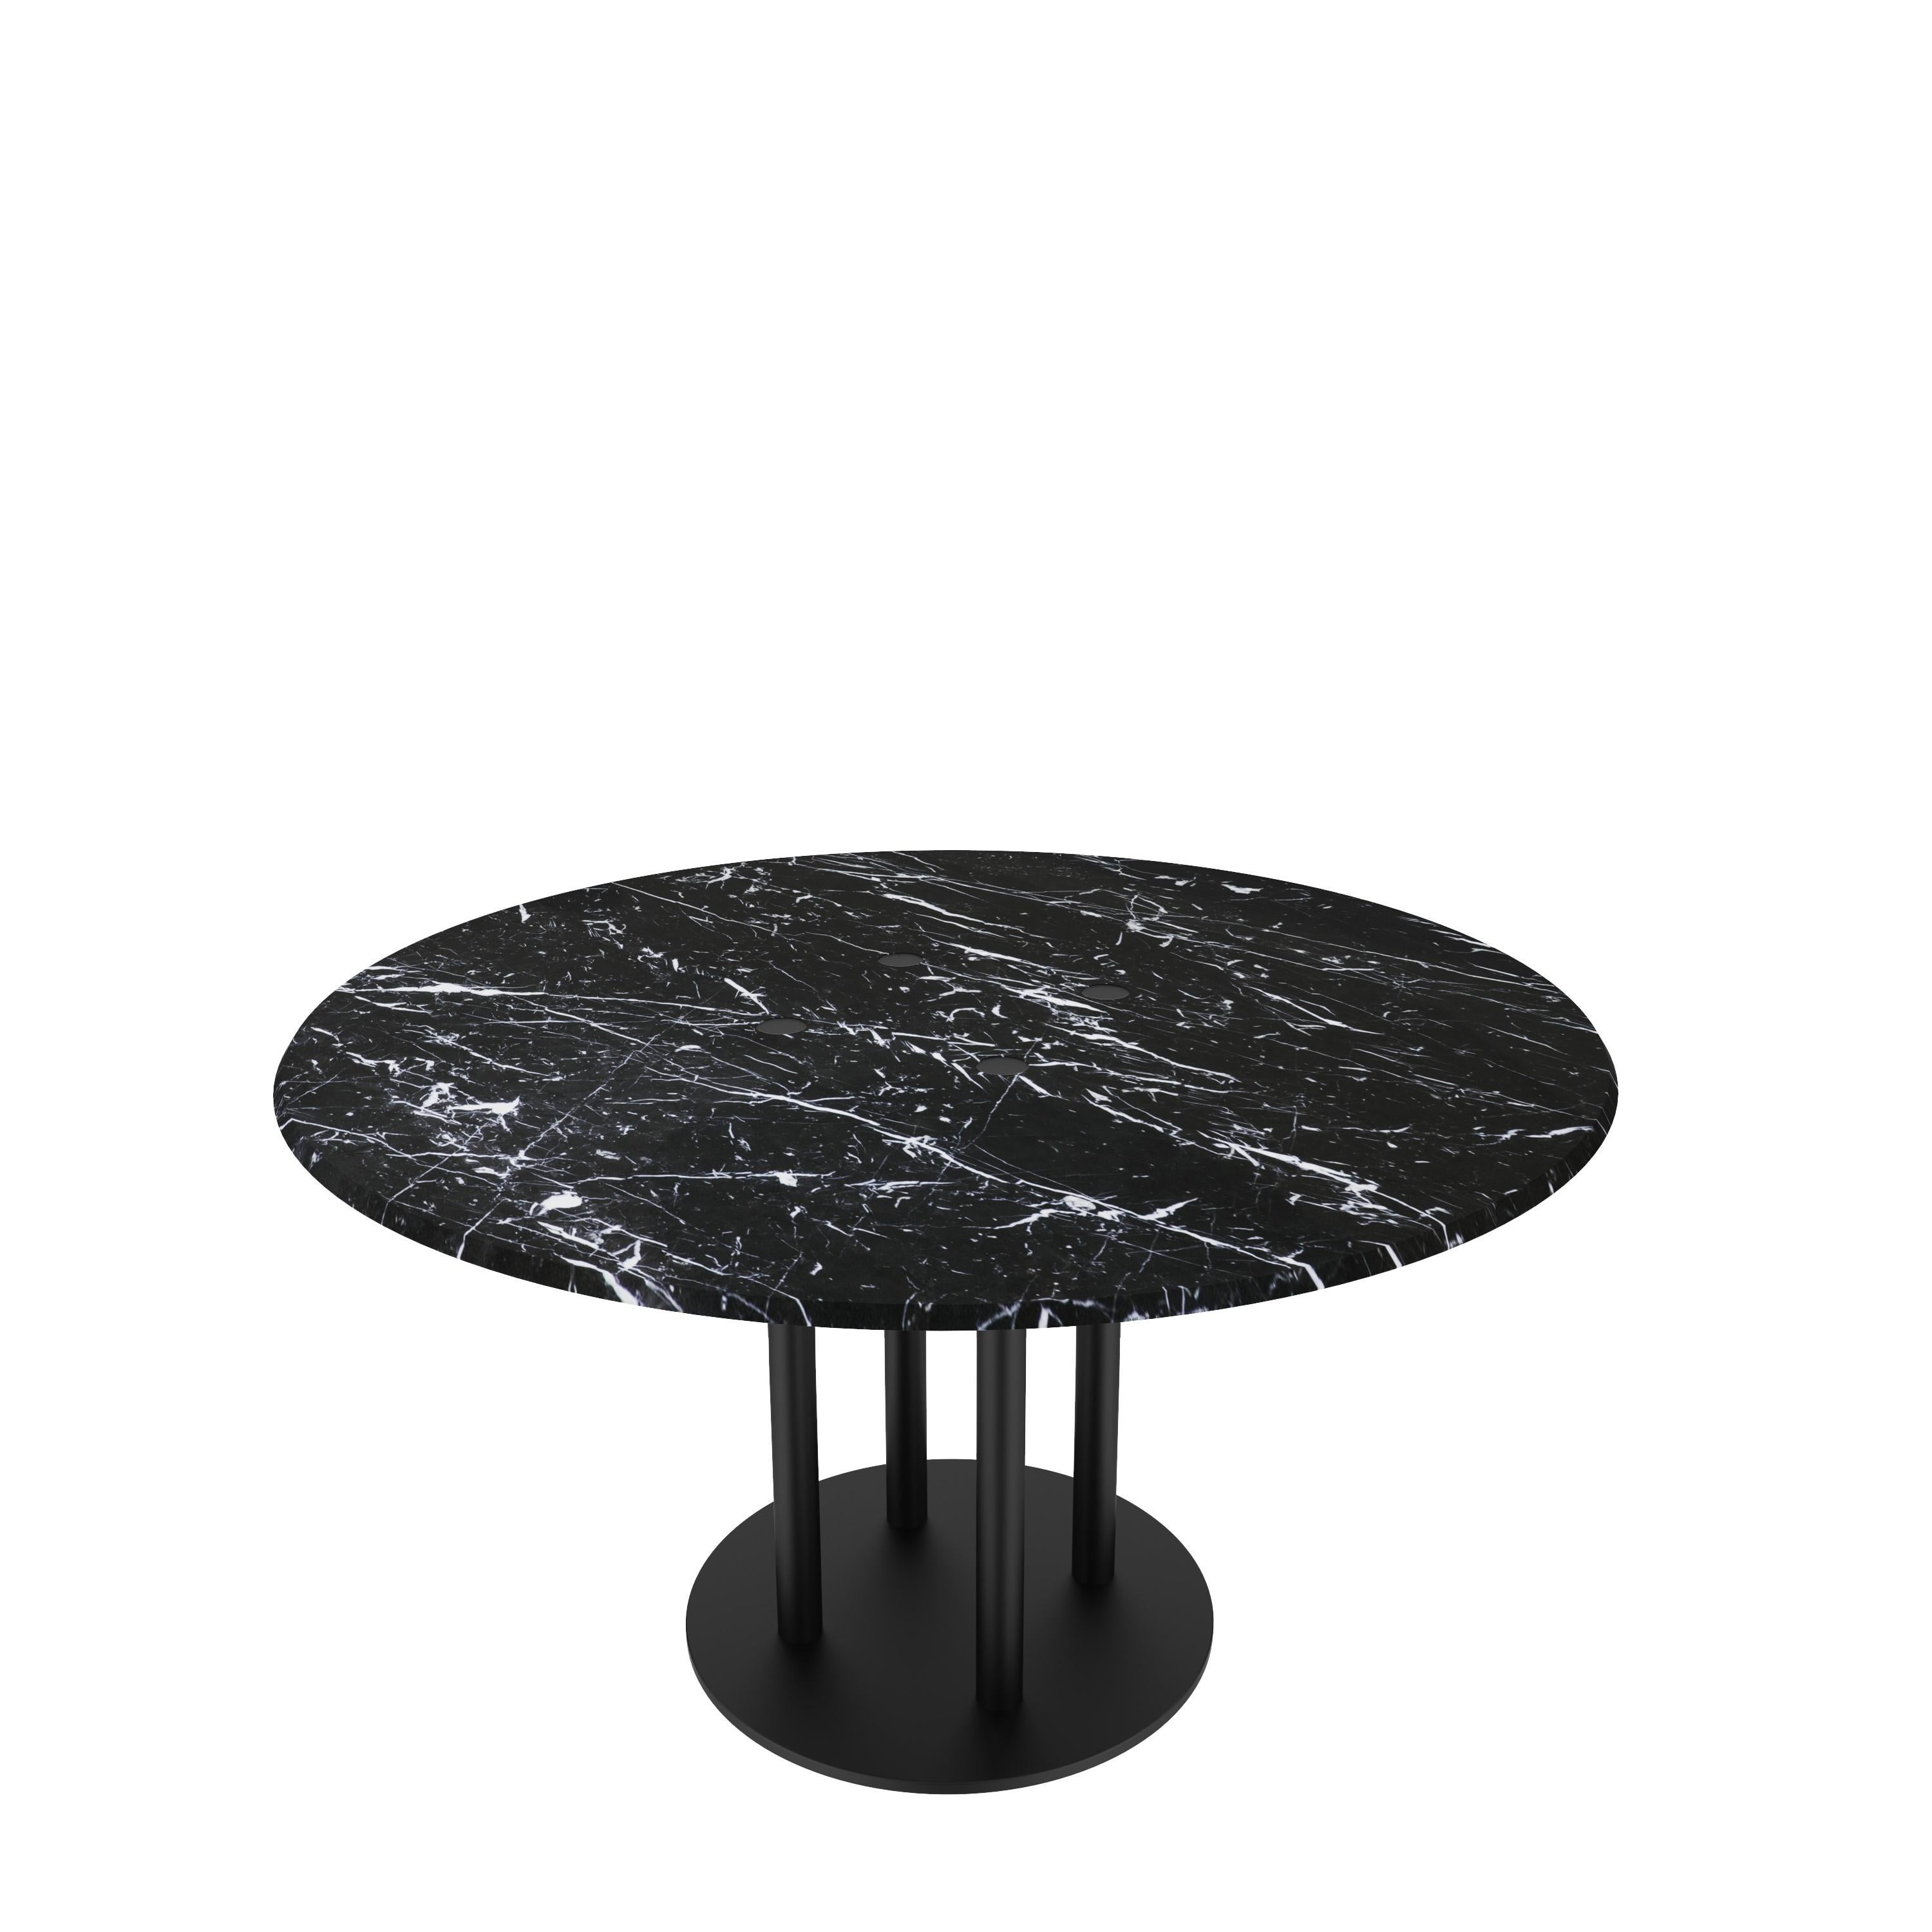 Scandinavian Modern NORDST Lot Dining Table, Italian Green Lightning Marble, Danish Modern Design For Sale